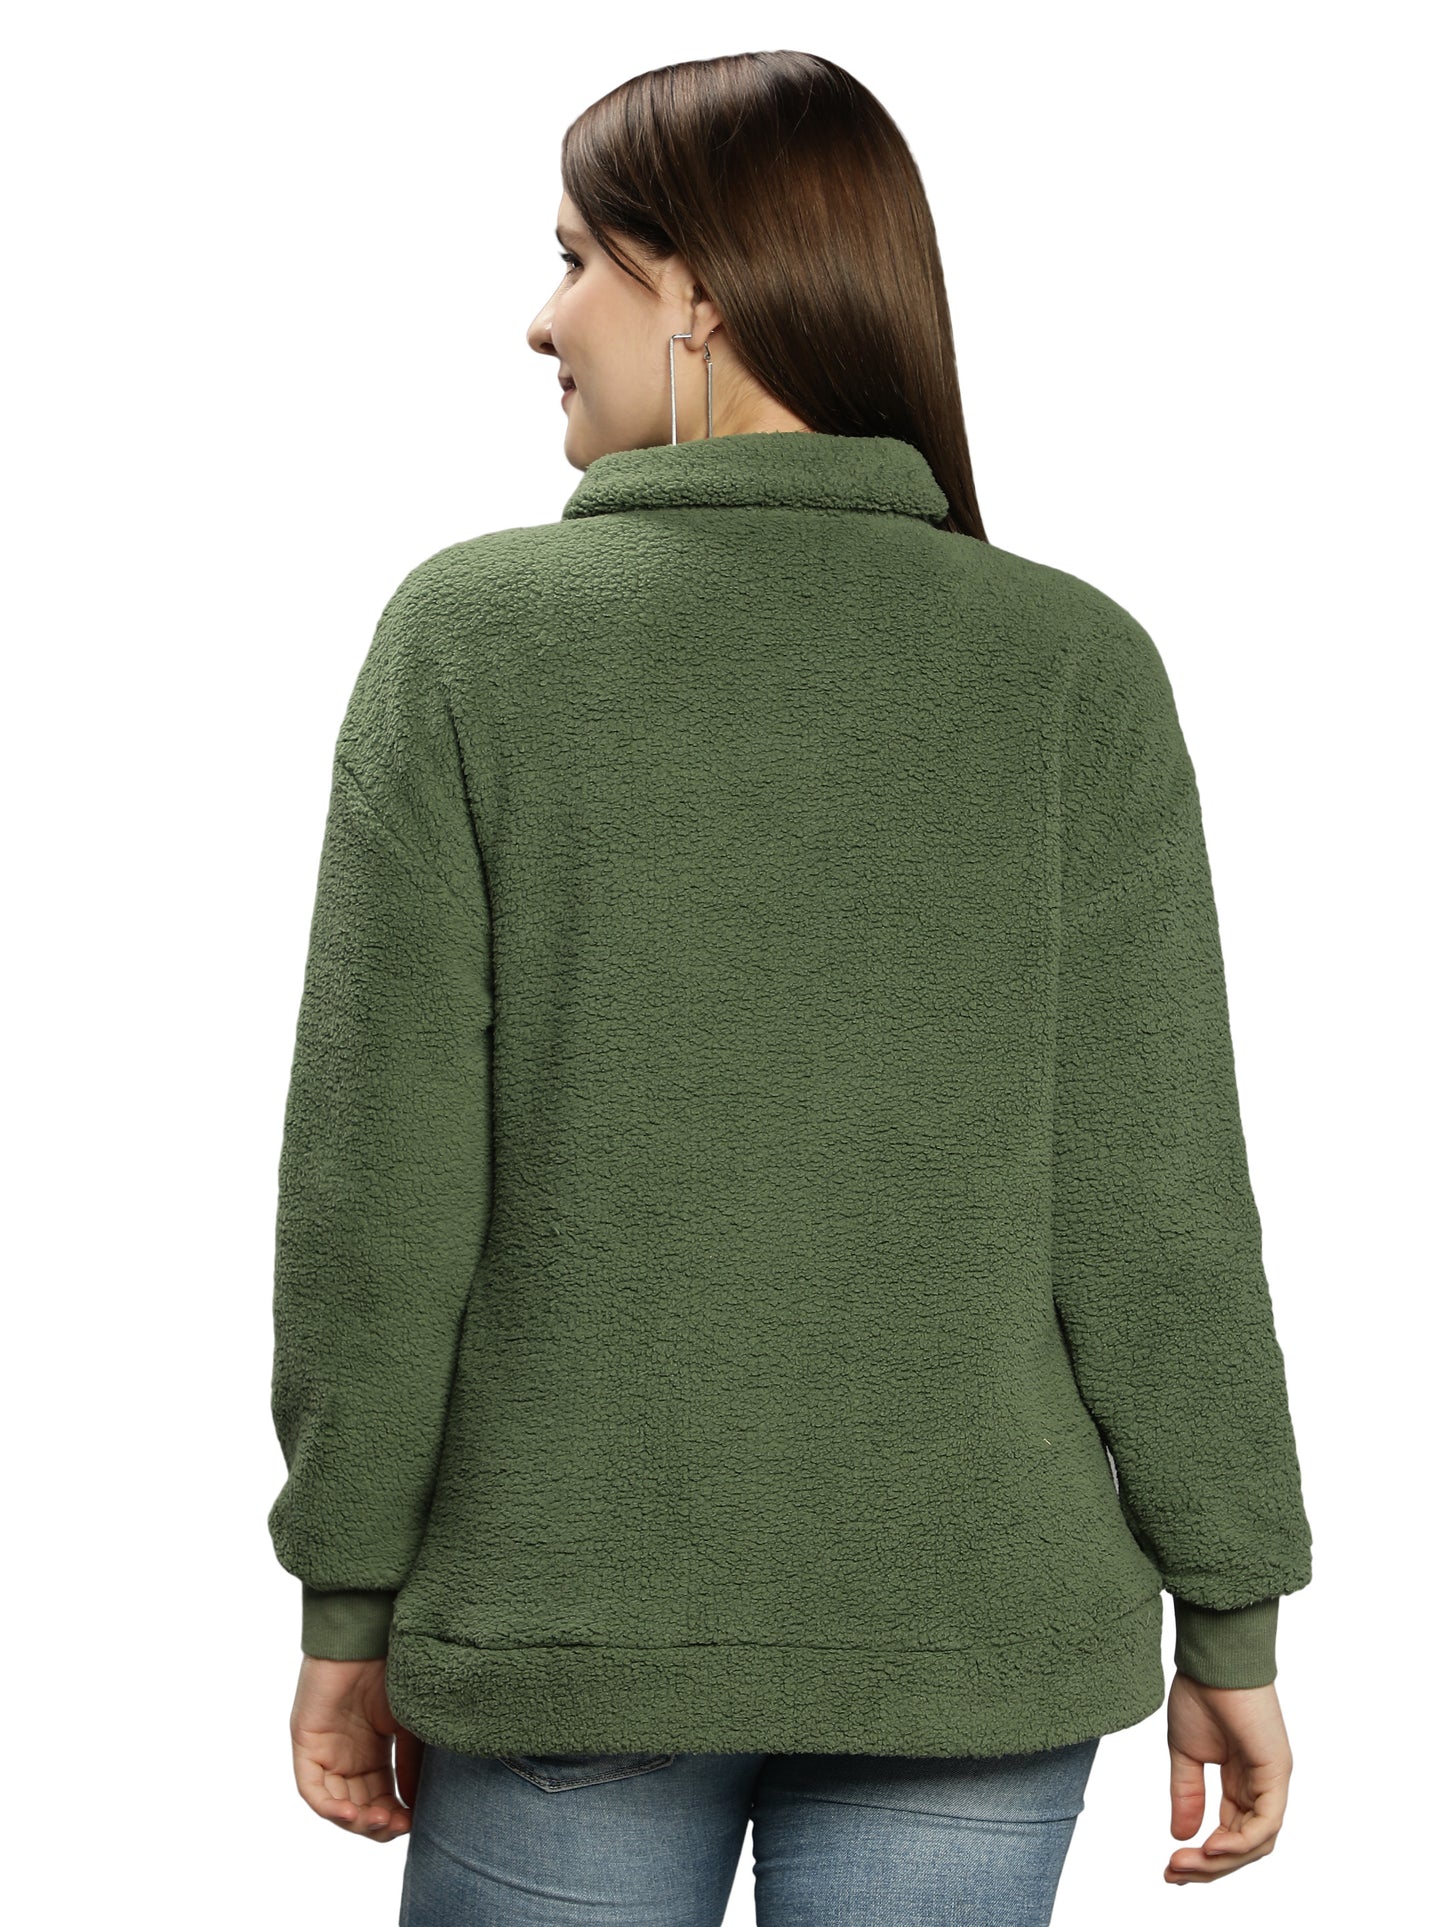 NUEVOSDAMAS Solid Olive Color Winter Sherpa Fur Sweatshirt